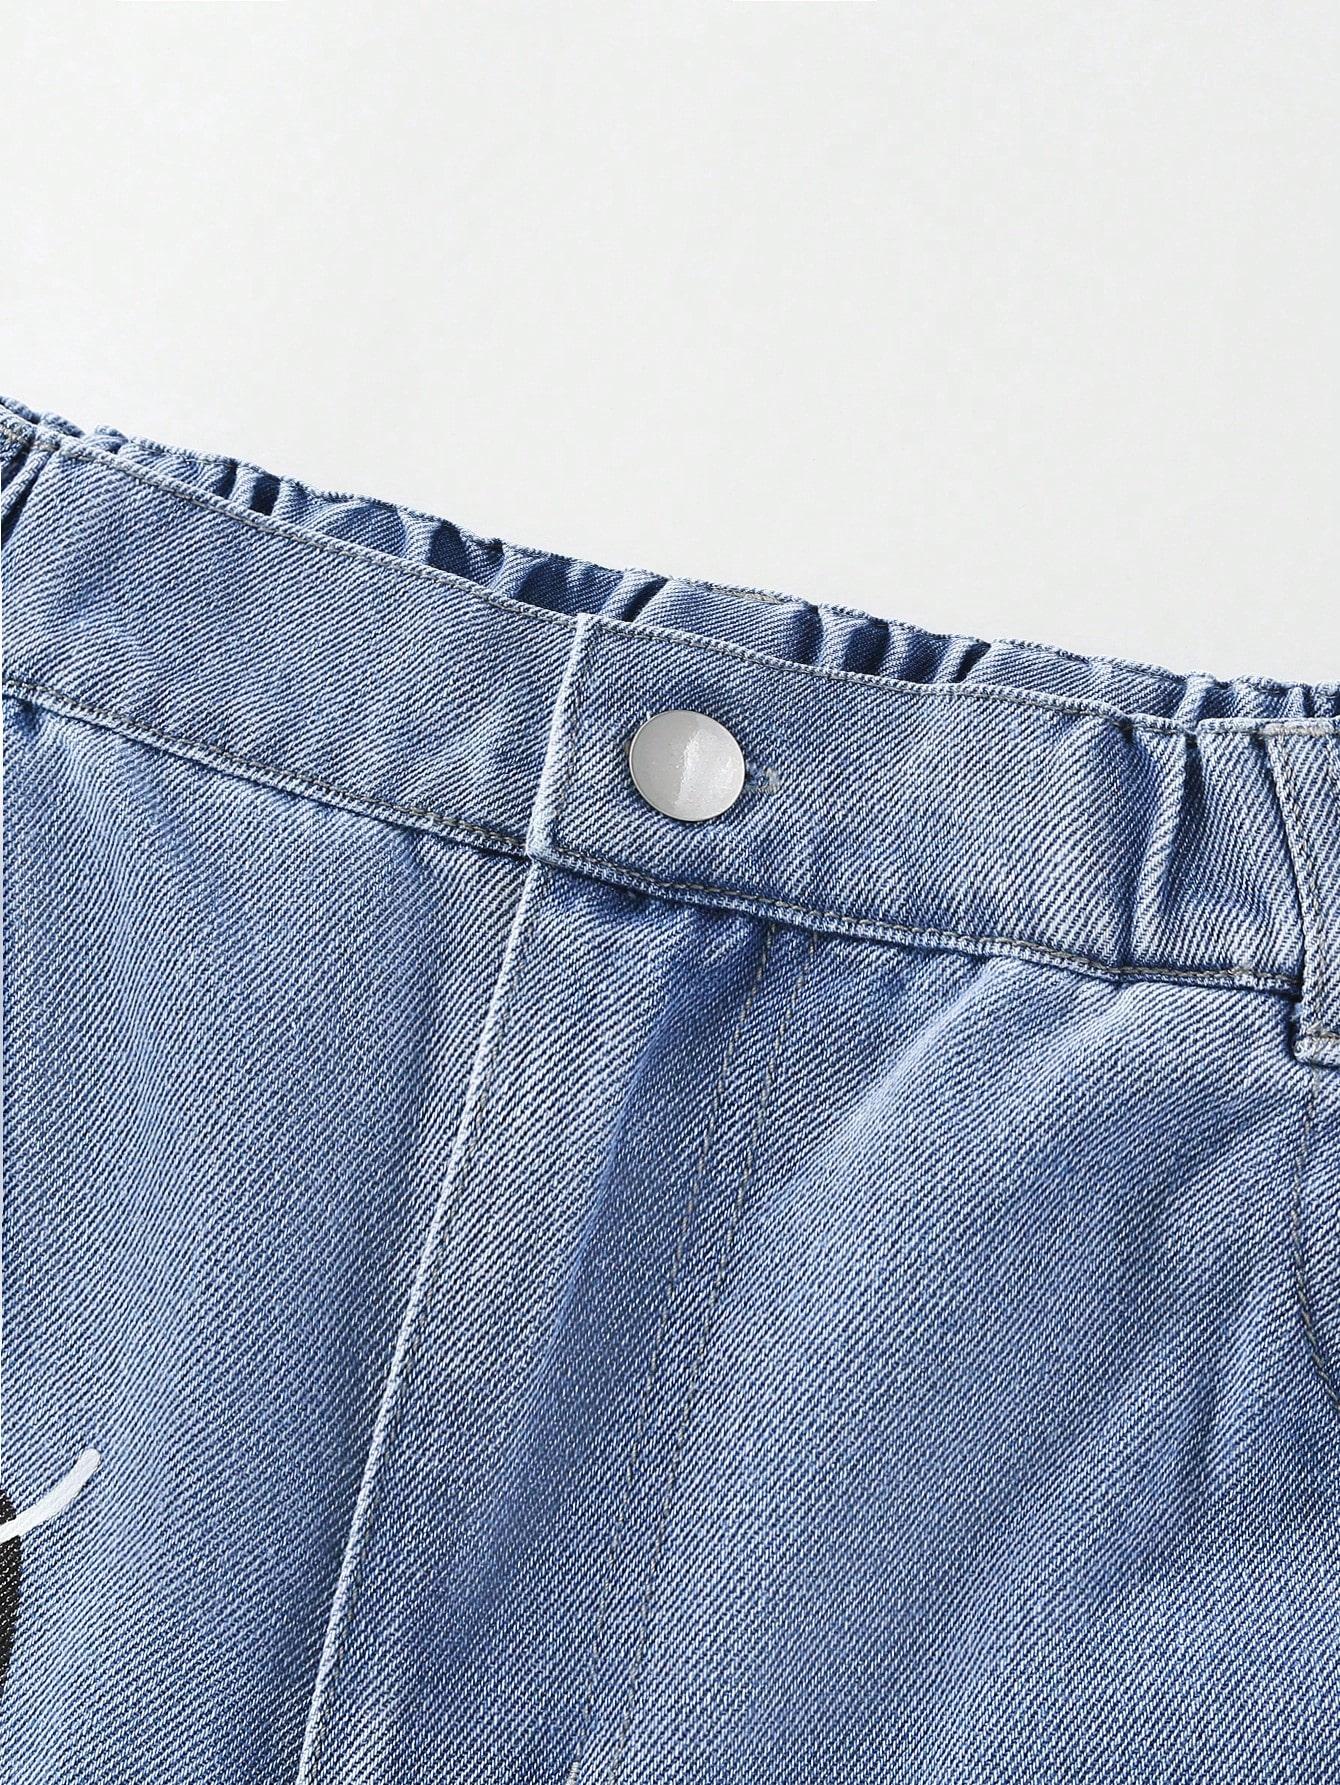 niebieskie spodnie jeans napisy